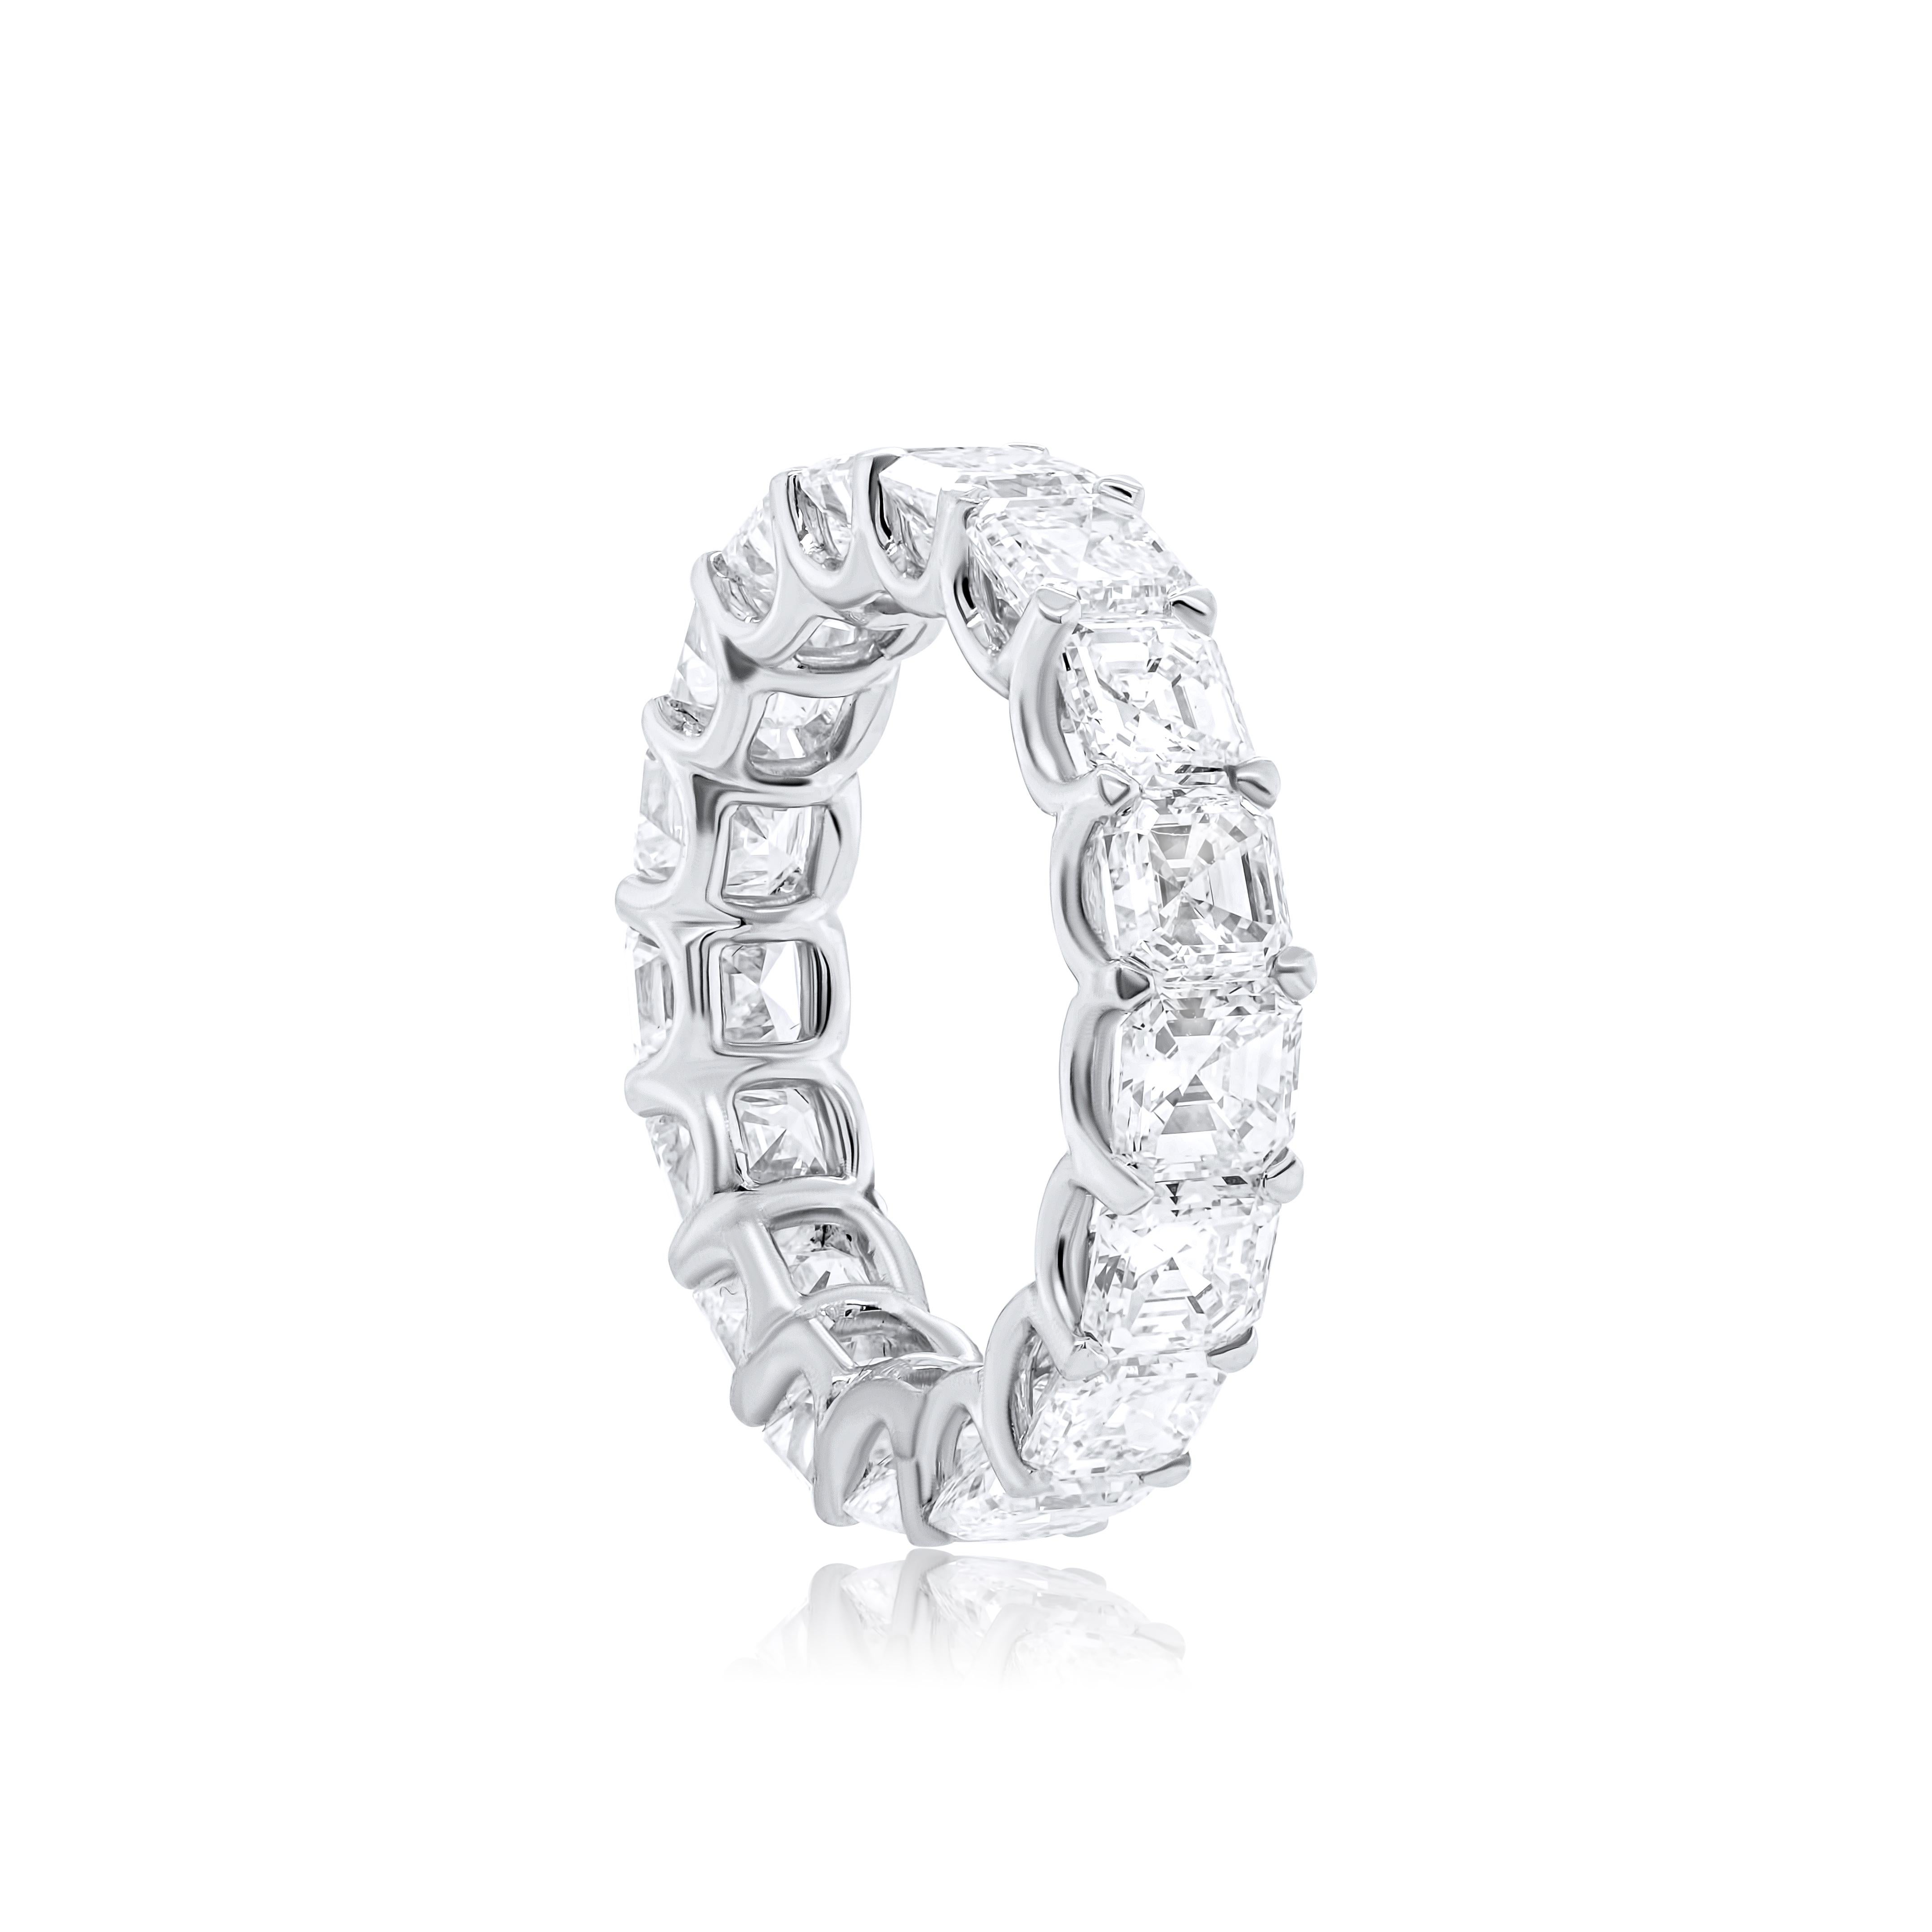 Asscher Cut Diana M. Platinum asscher cut diamonds VVSVS def eternity wedding band with 8.85 For Sale